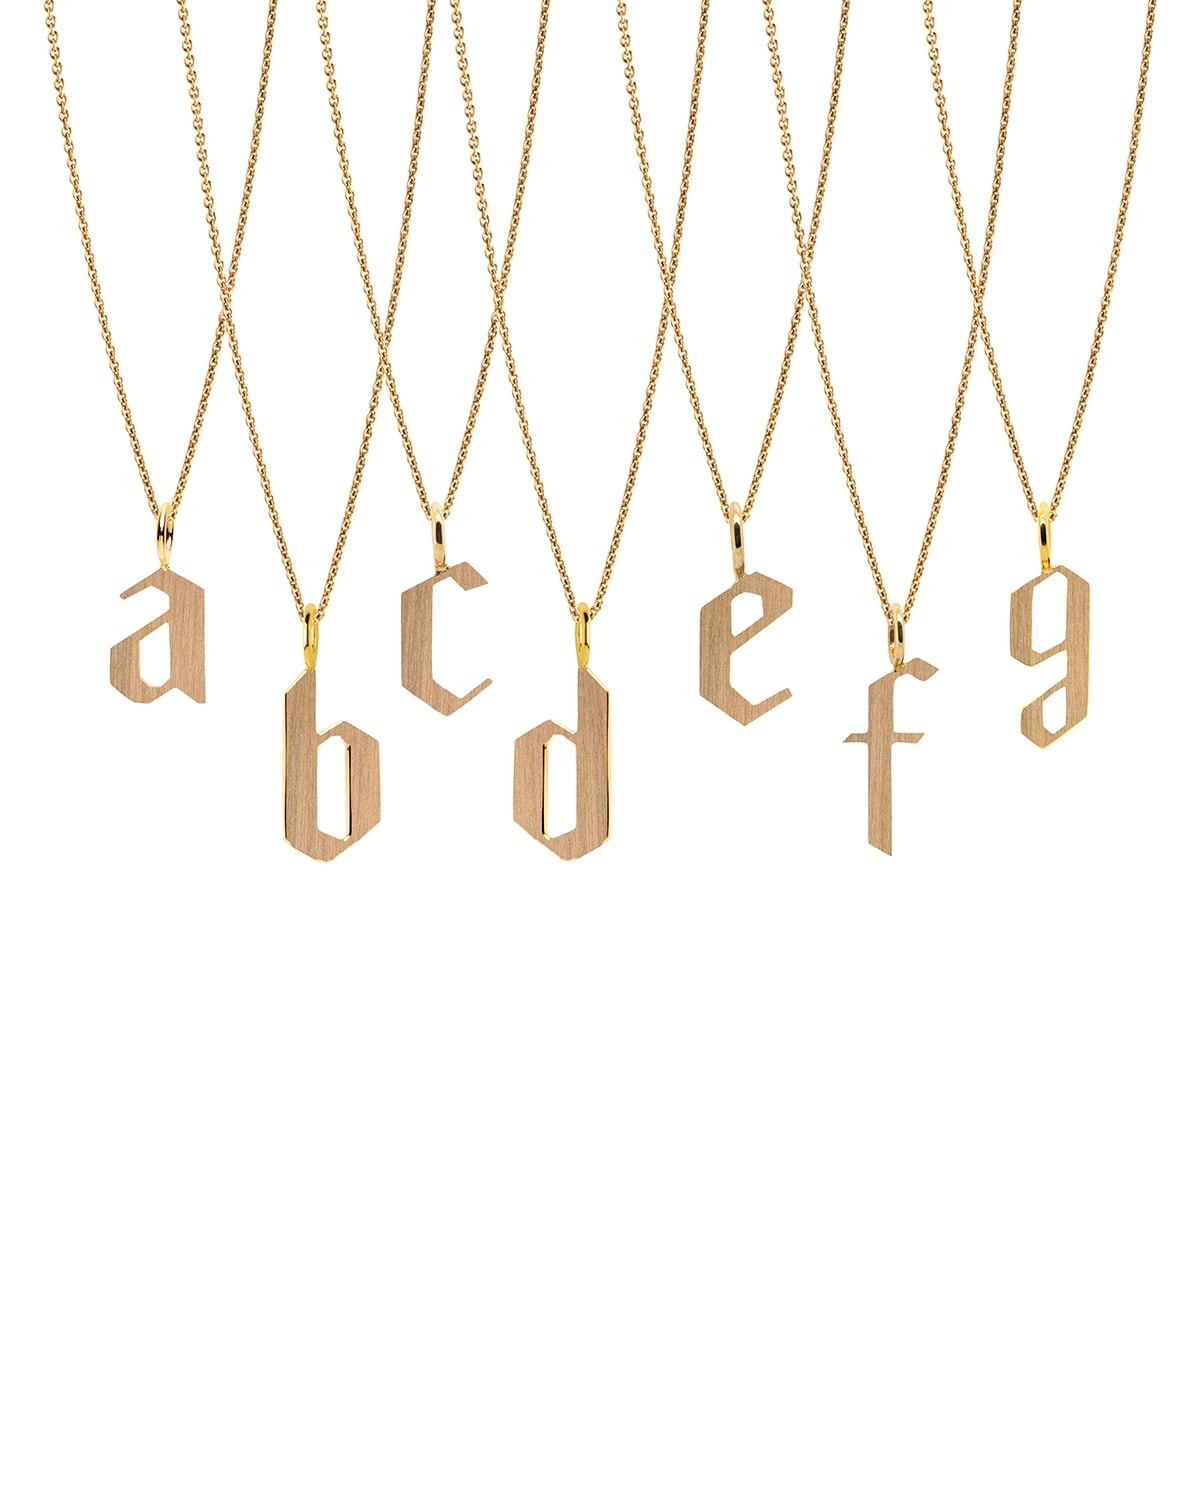 Bridget King Jewelry 14k Alphabet Necklace